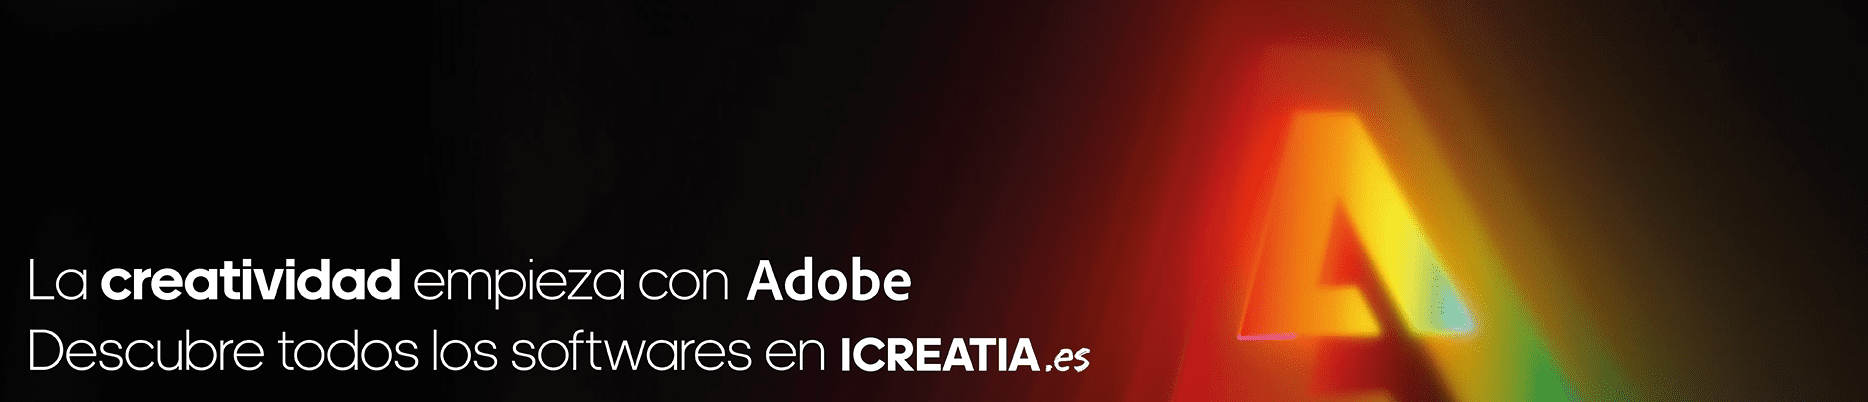 Toda la creatividad de Adobe en icreatia.es